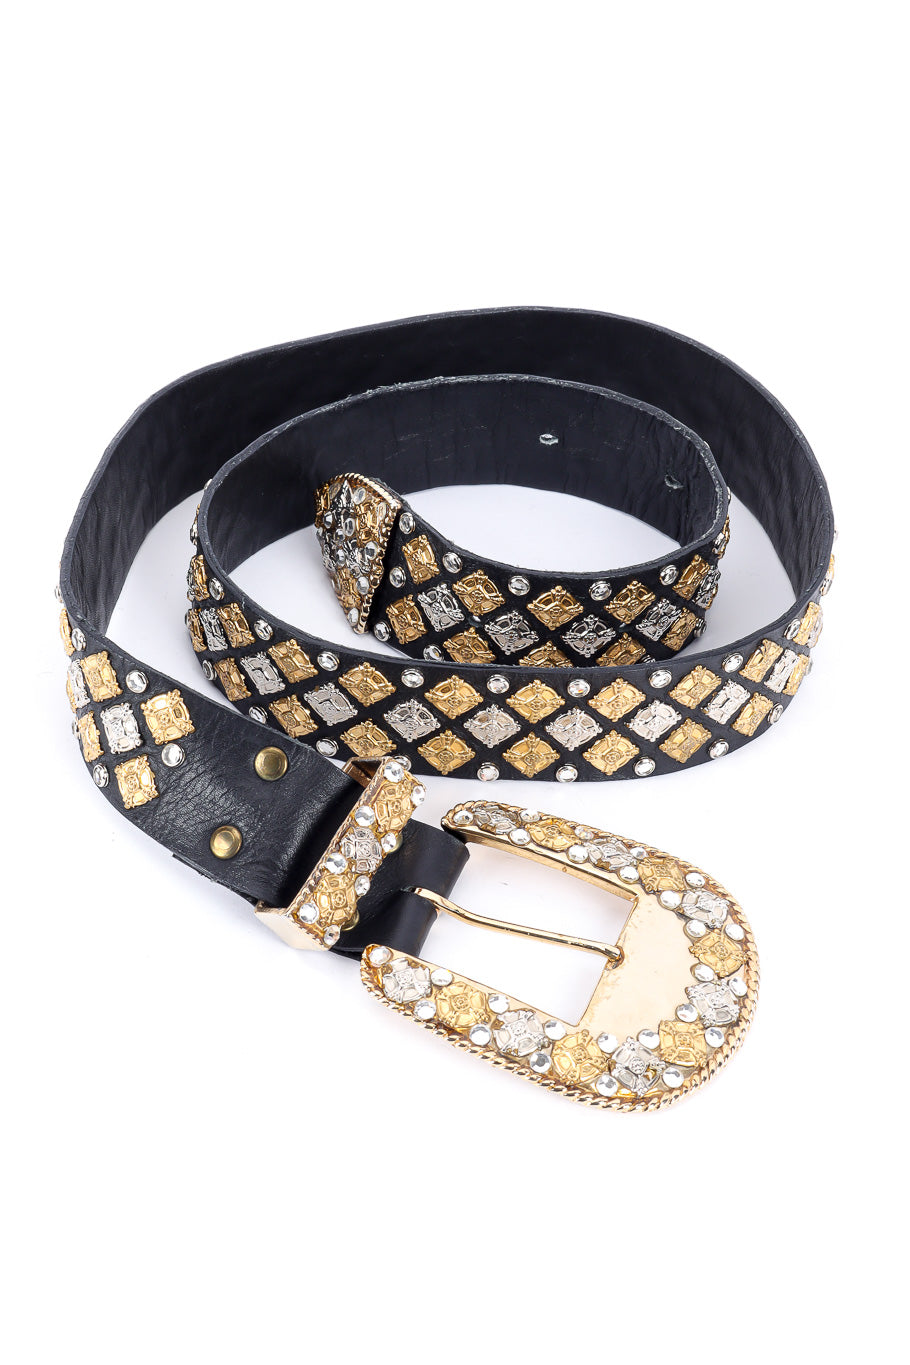 Michael Morrison crystal studded leather belt product shot @recessla